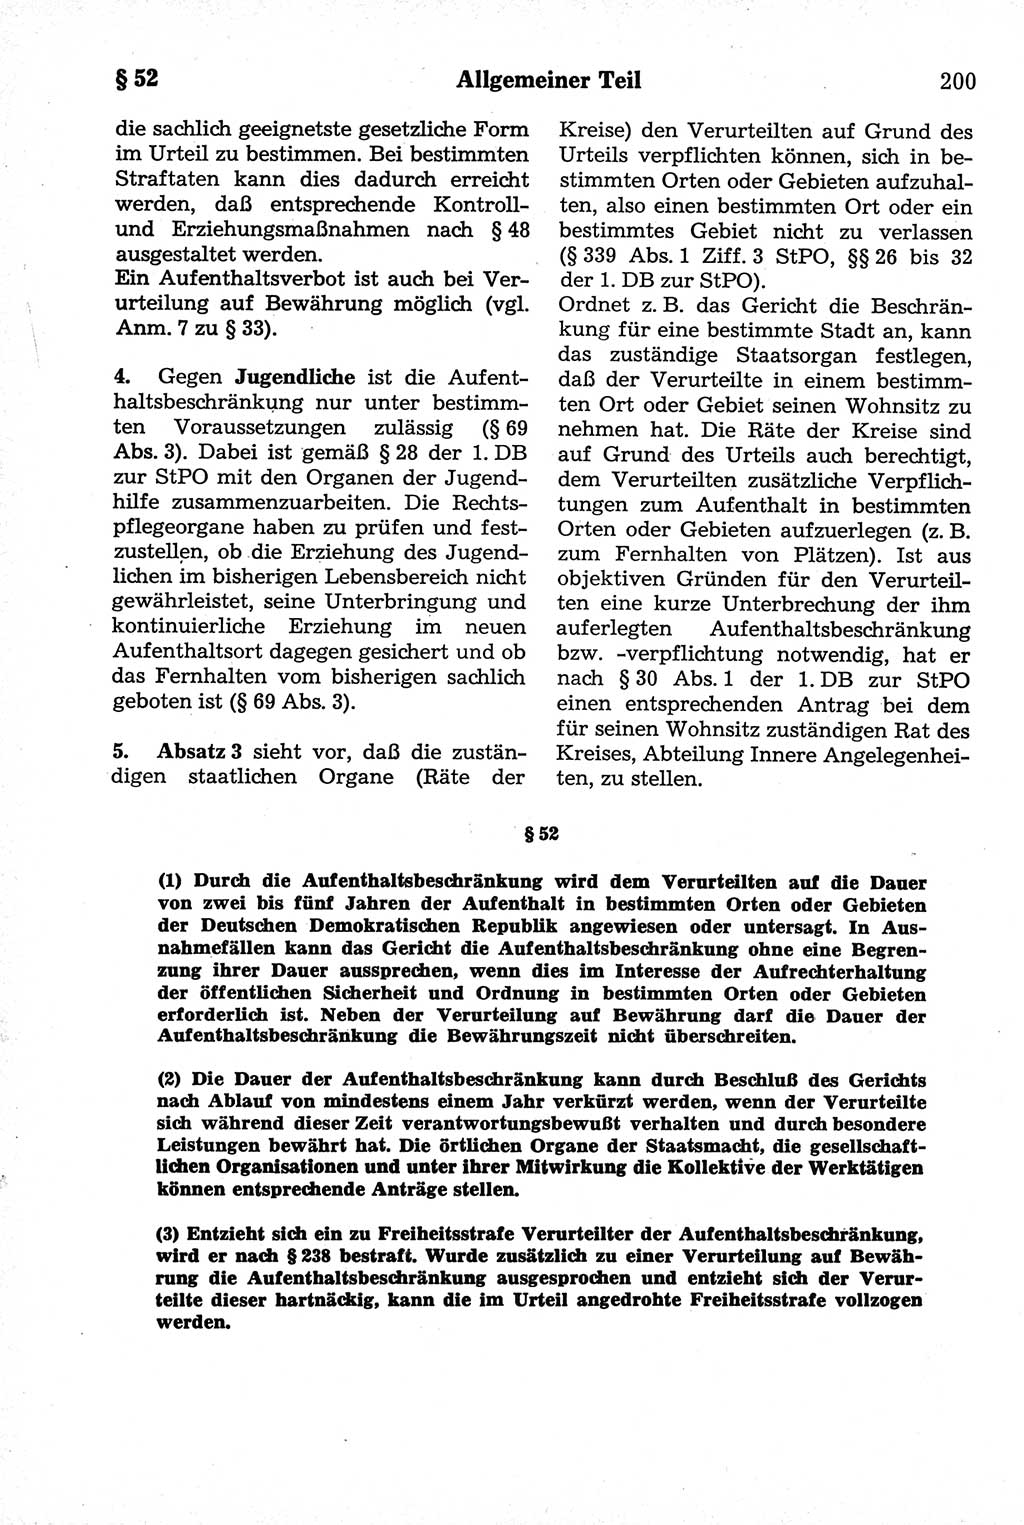 Strafrecht der Deutschen Demokratischen Republik (DDR), Kommentar zum Strafgesetzbuch (StGB) 1981, Seite 200 (Strafr. DDR Komm. StGB 1981, S. 200)